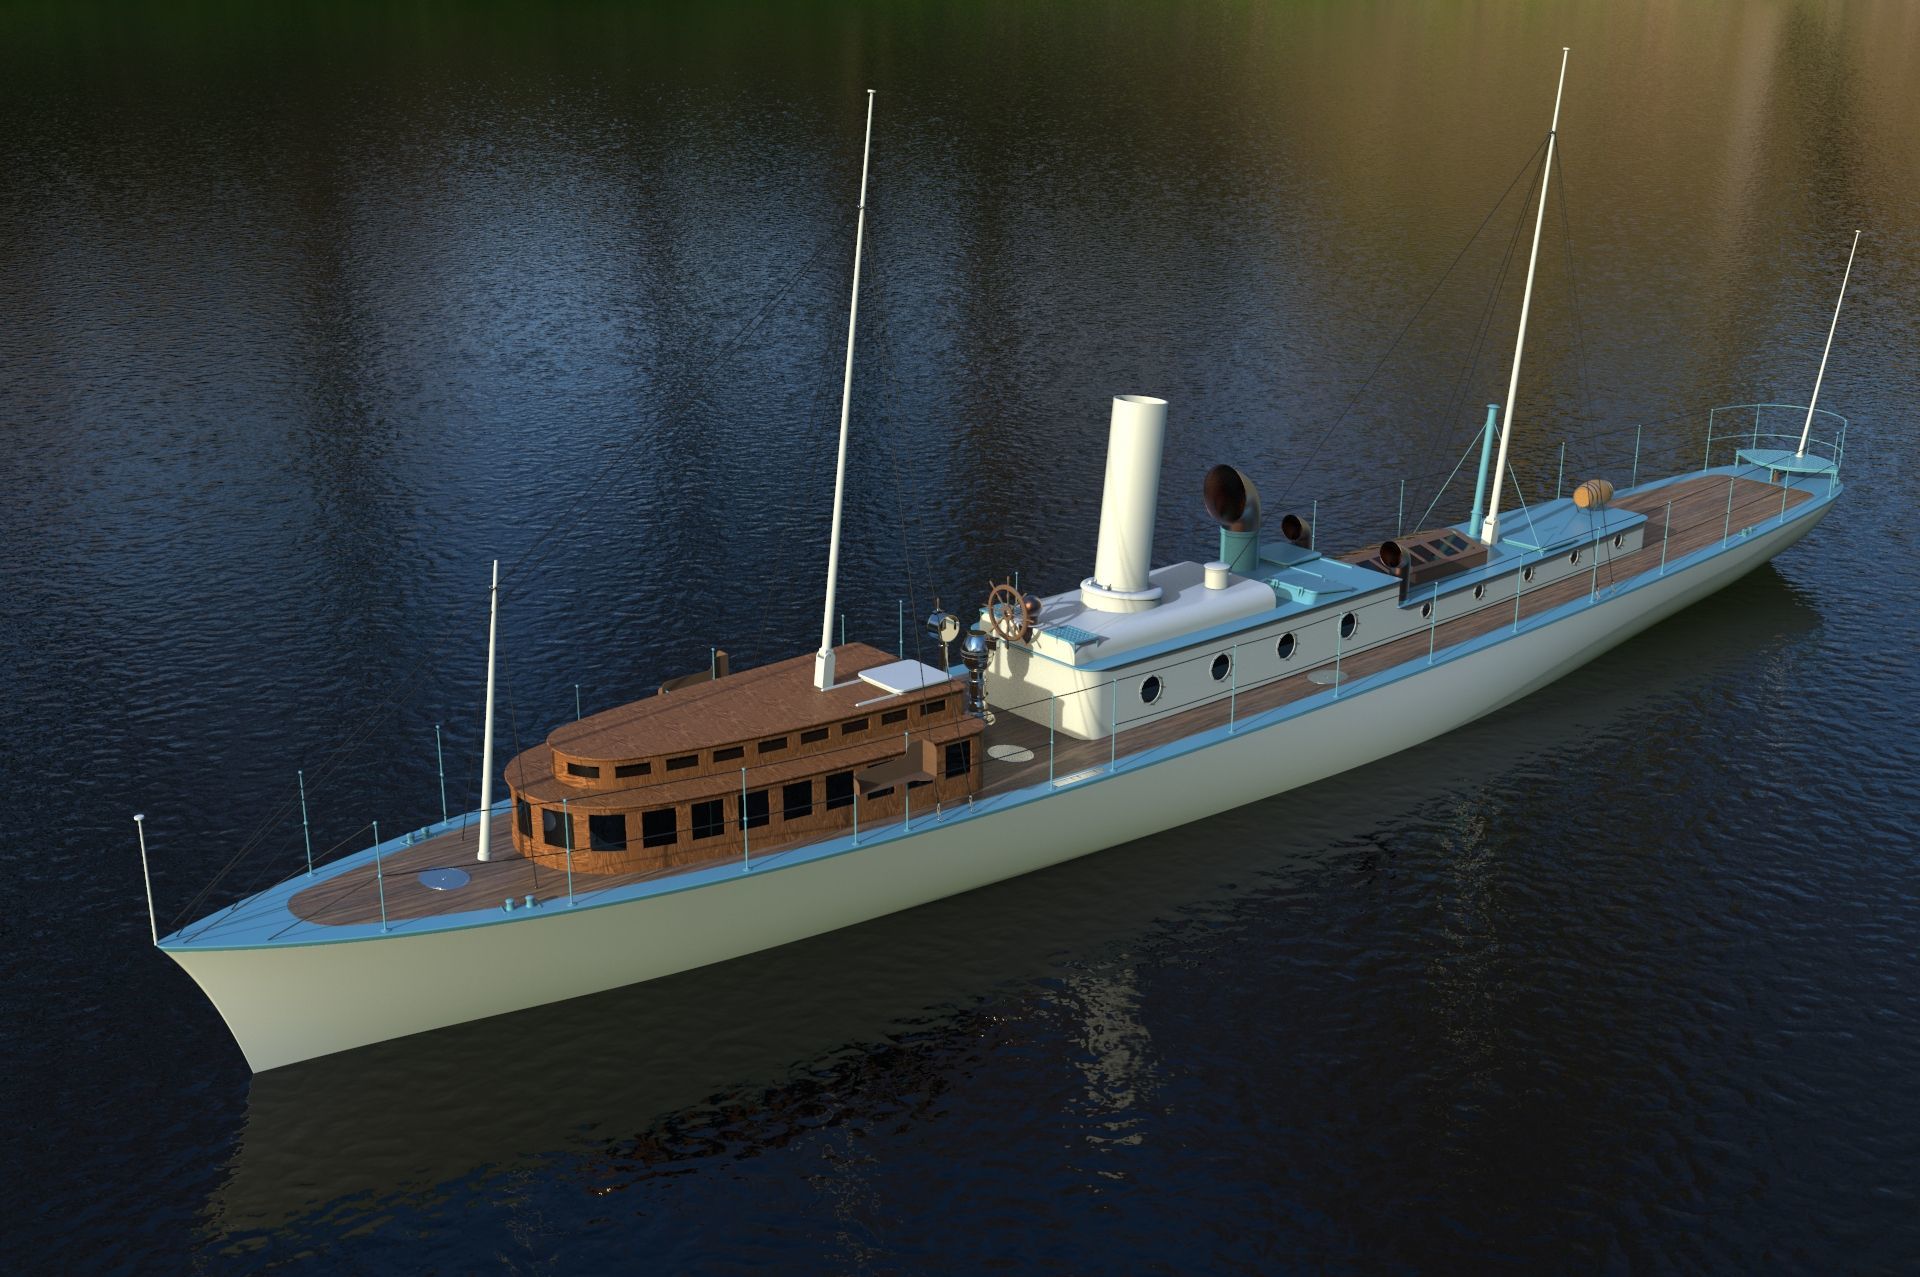 Il manque 550 000 francs pour que La Peccadille ressemble à cet élégant navire.